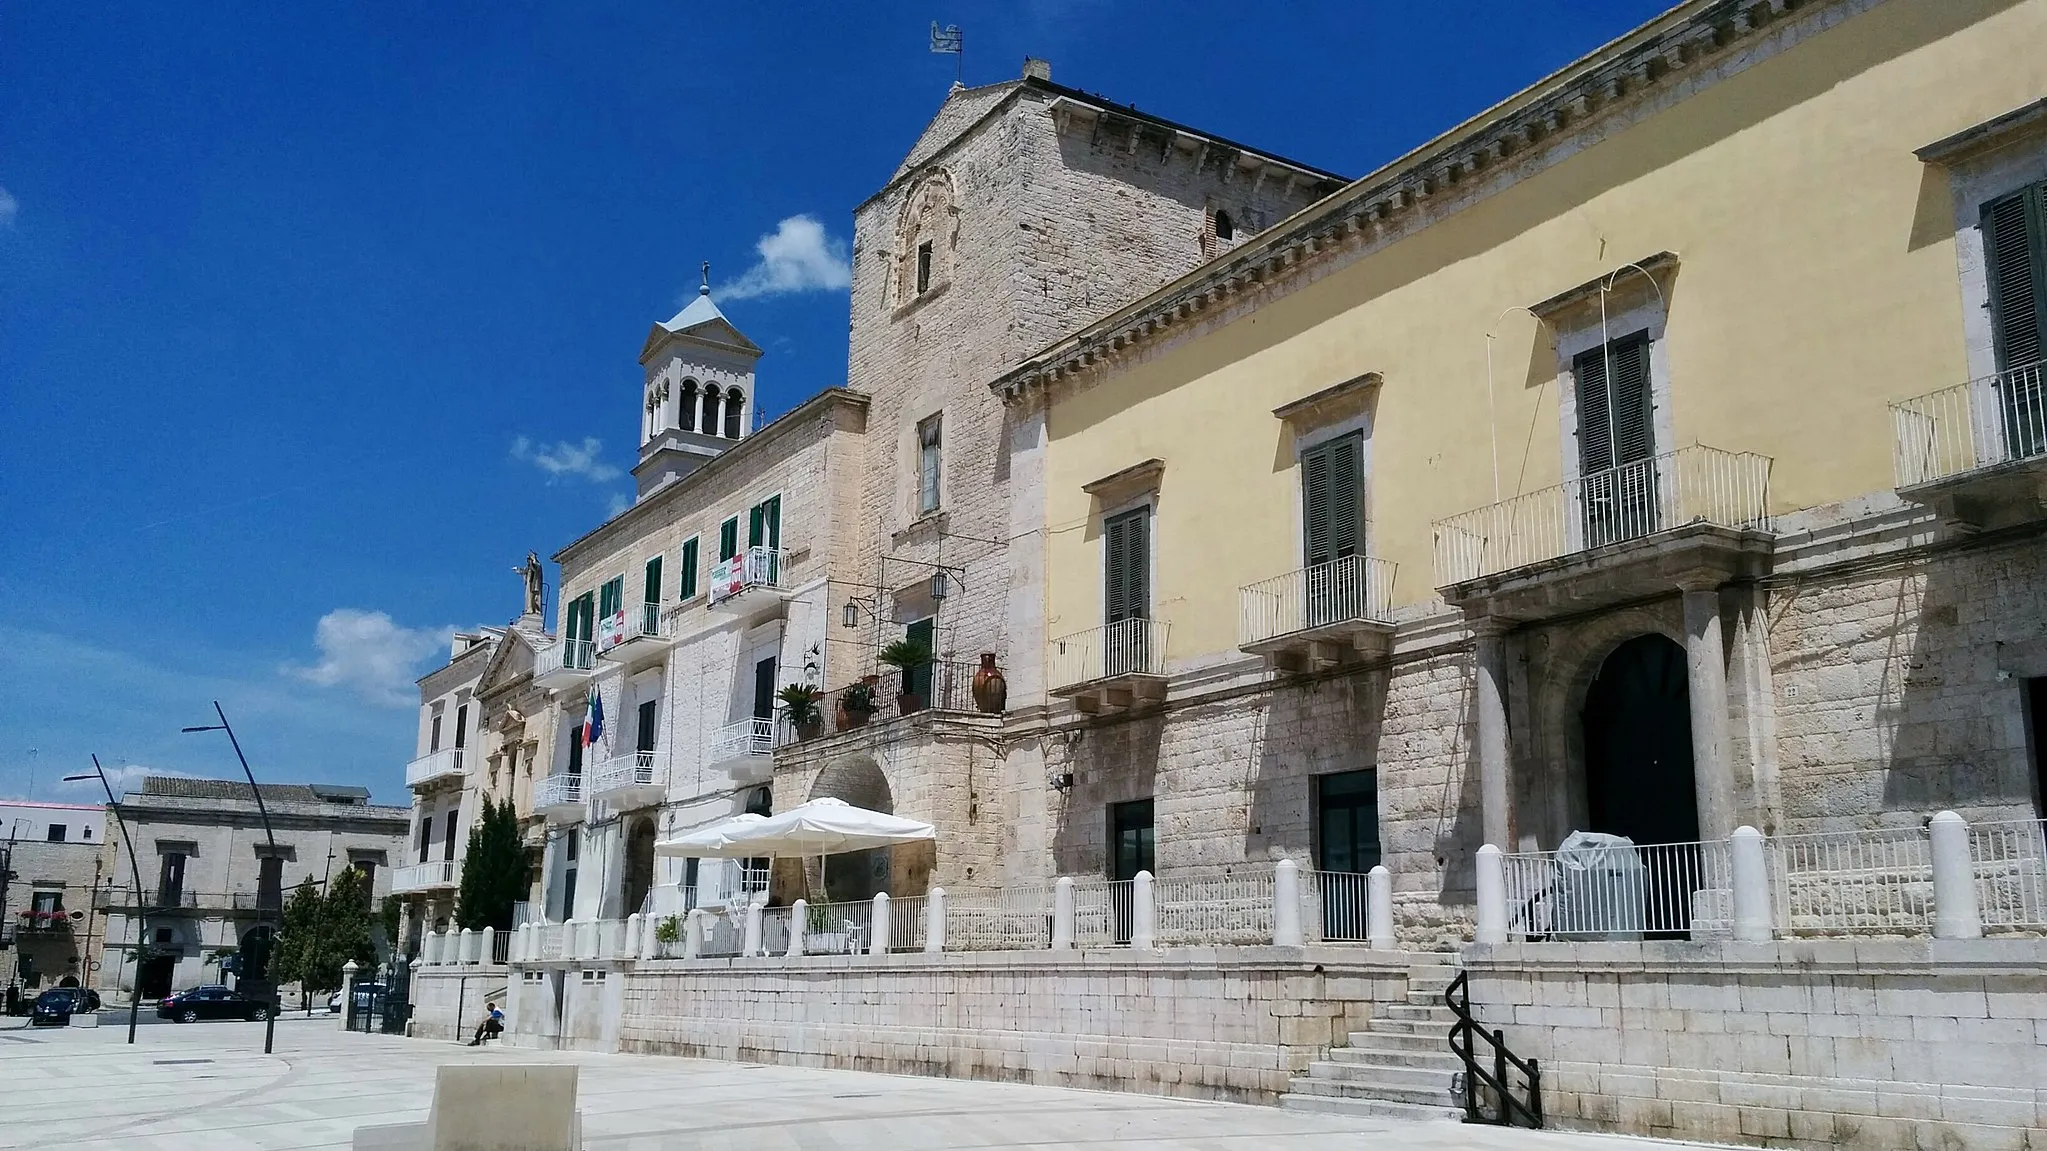 Photo showing: Melodia's Palace and the Castle in Matteotti square, Ruvo di Puglia